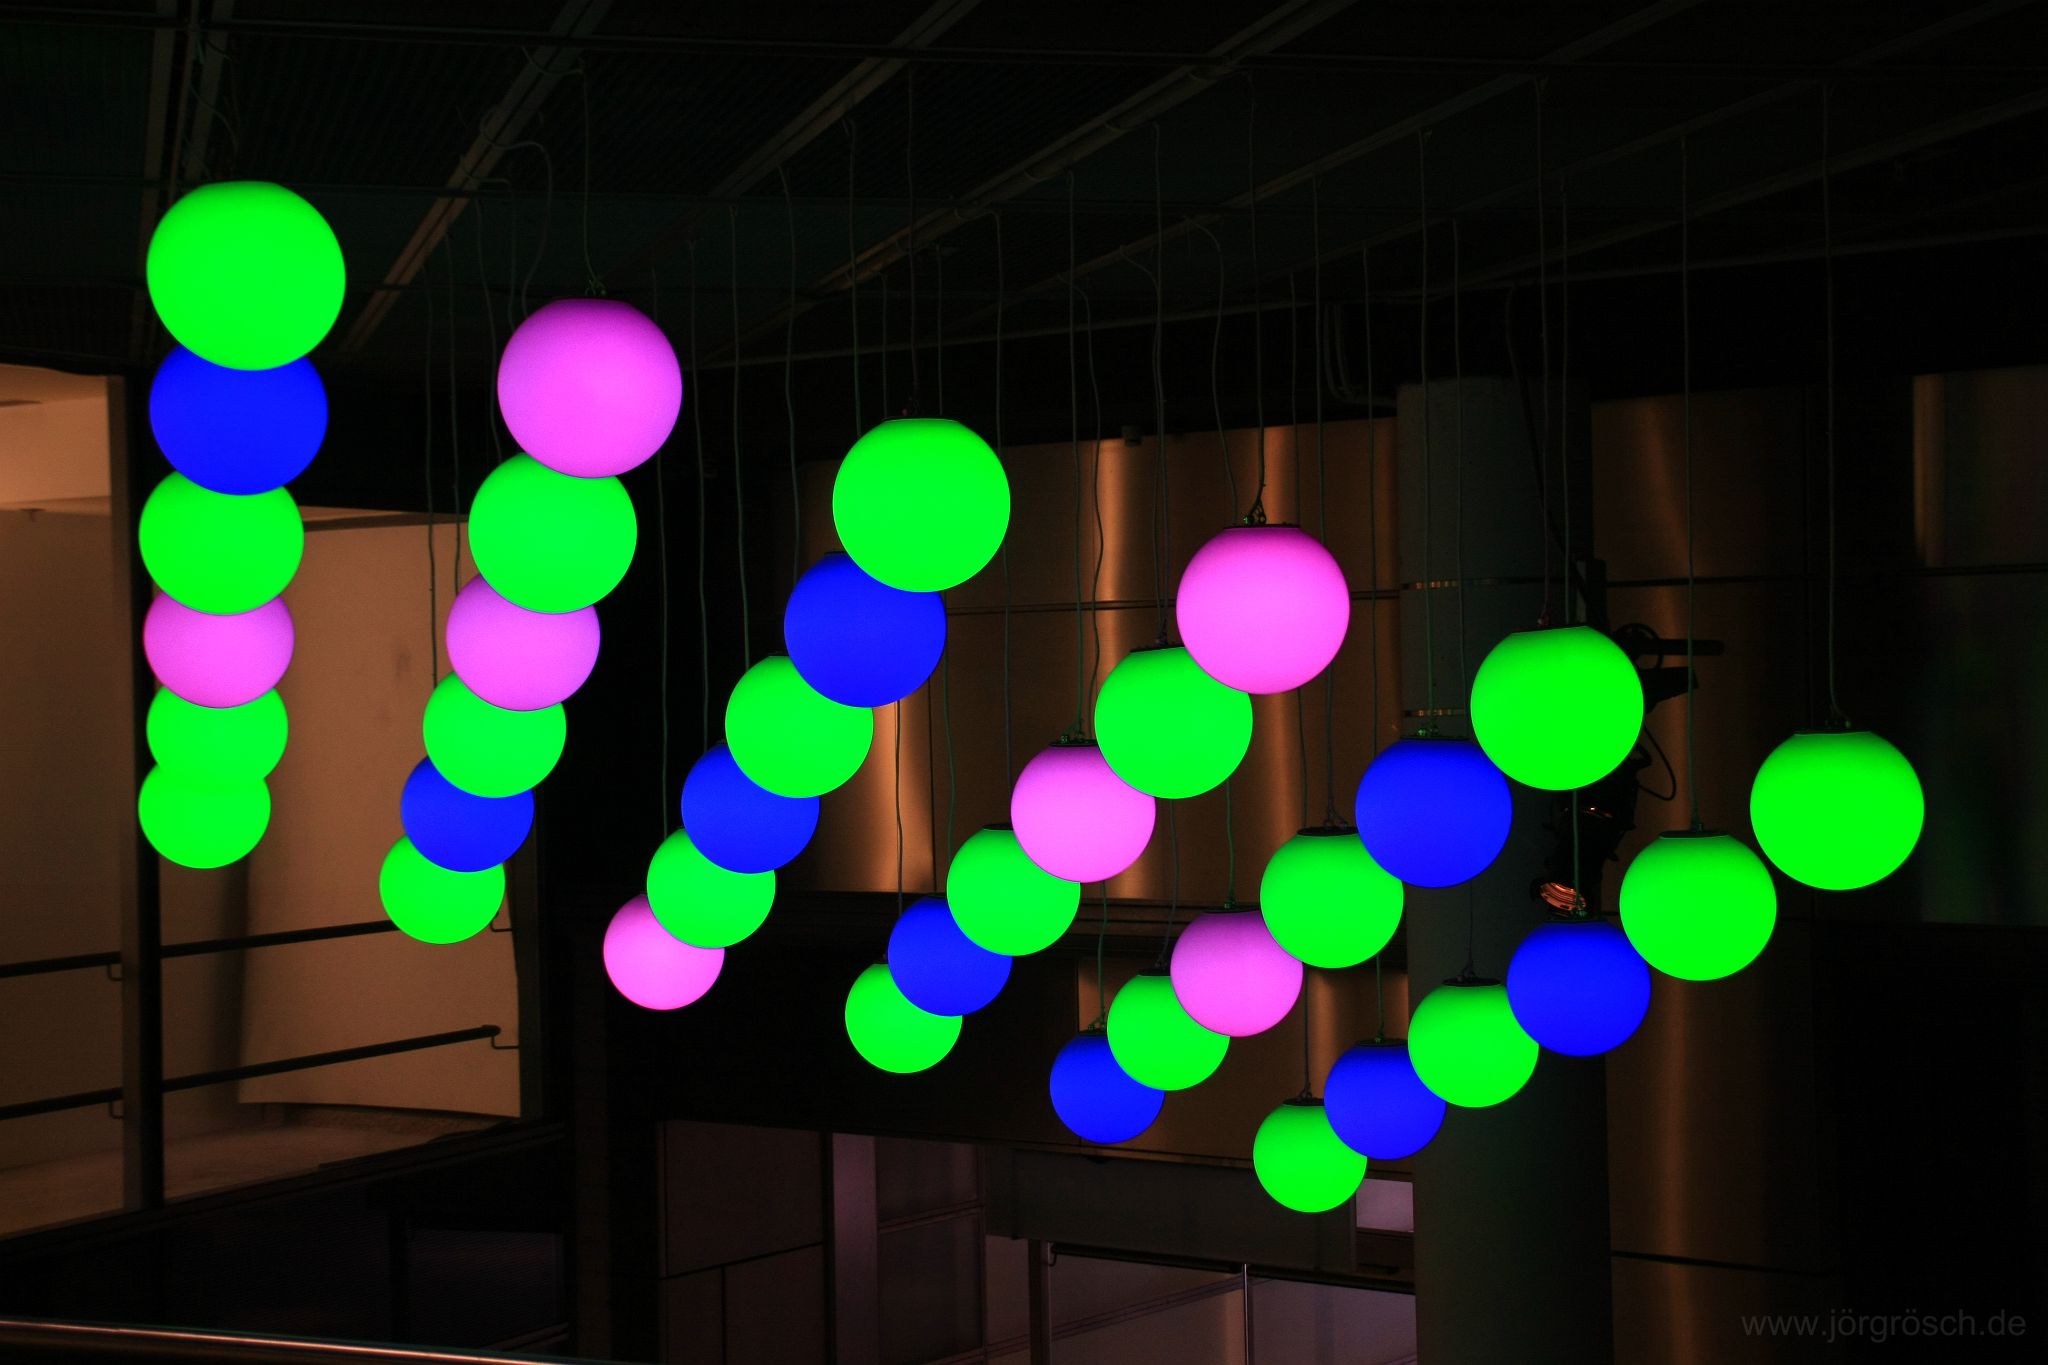 20120421-sonycenter.jpg - Lampen, Sony Center